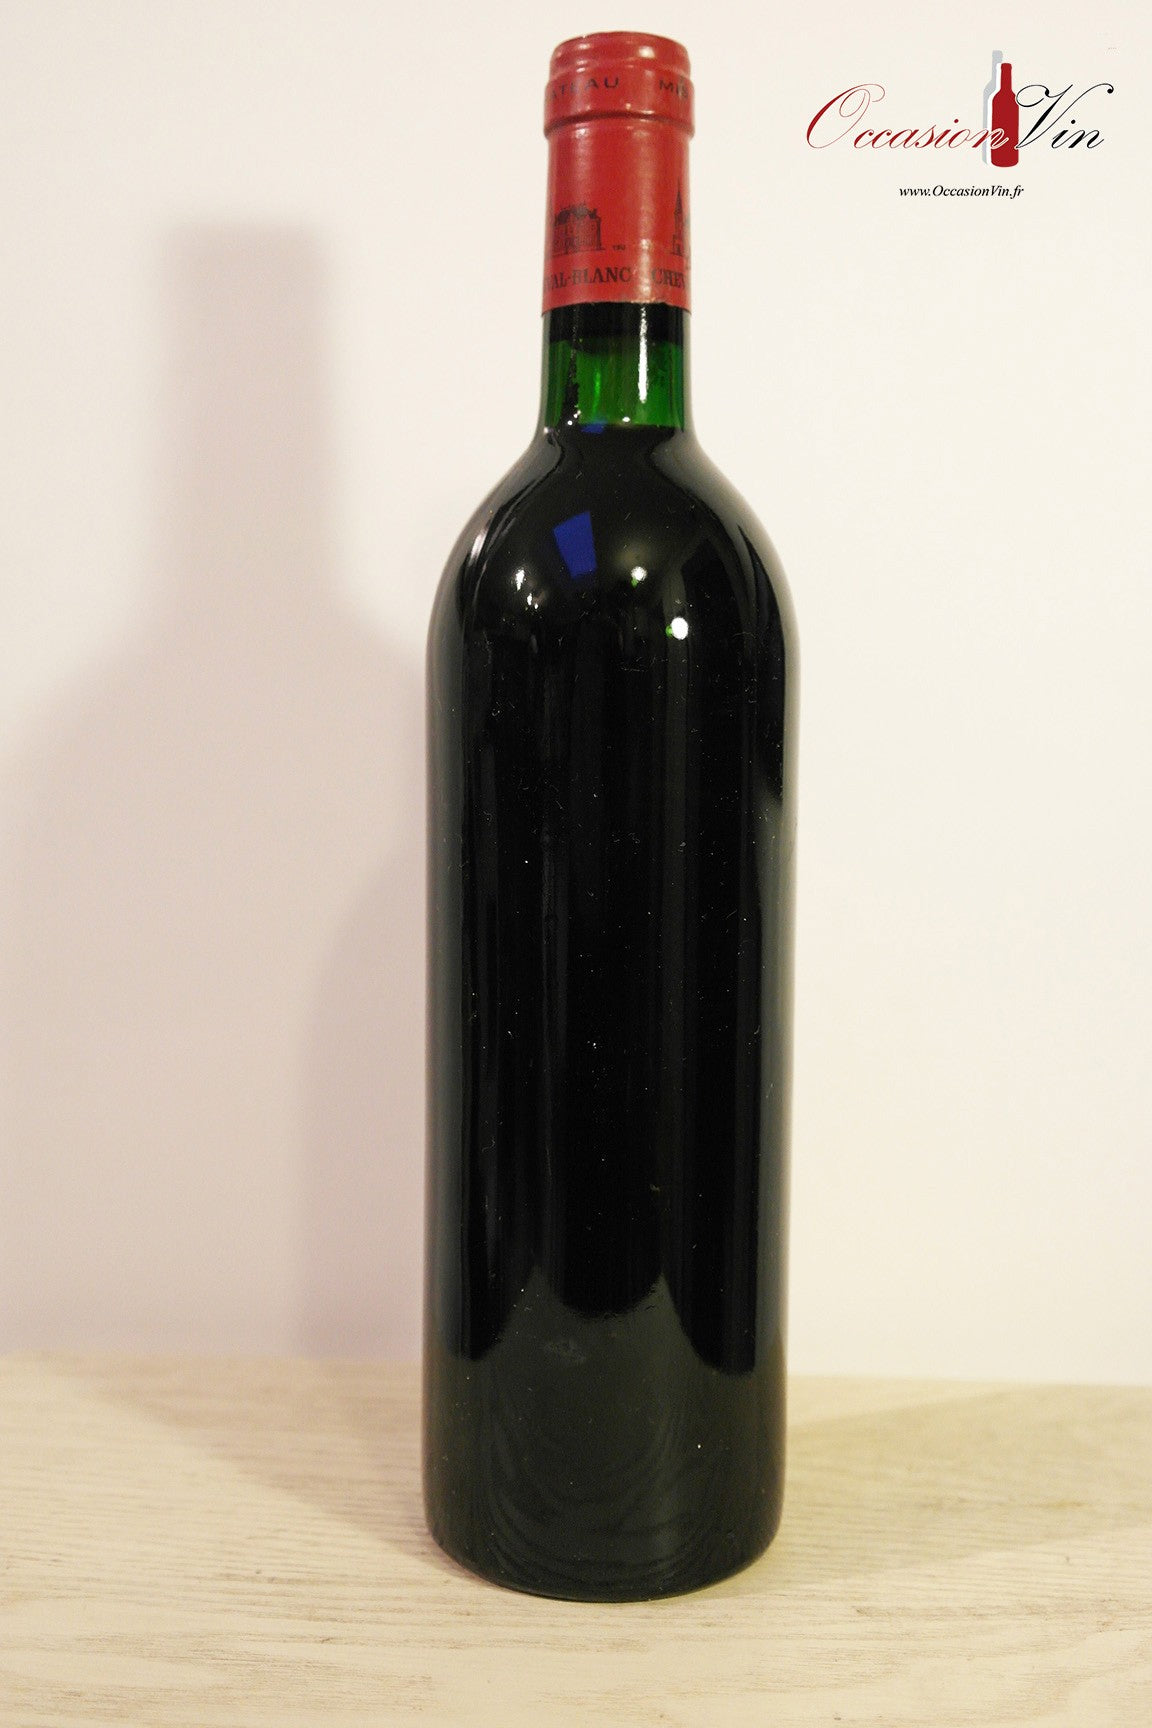 Château Cheval Blanc Vin 1985